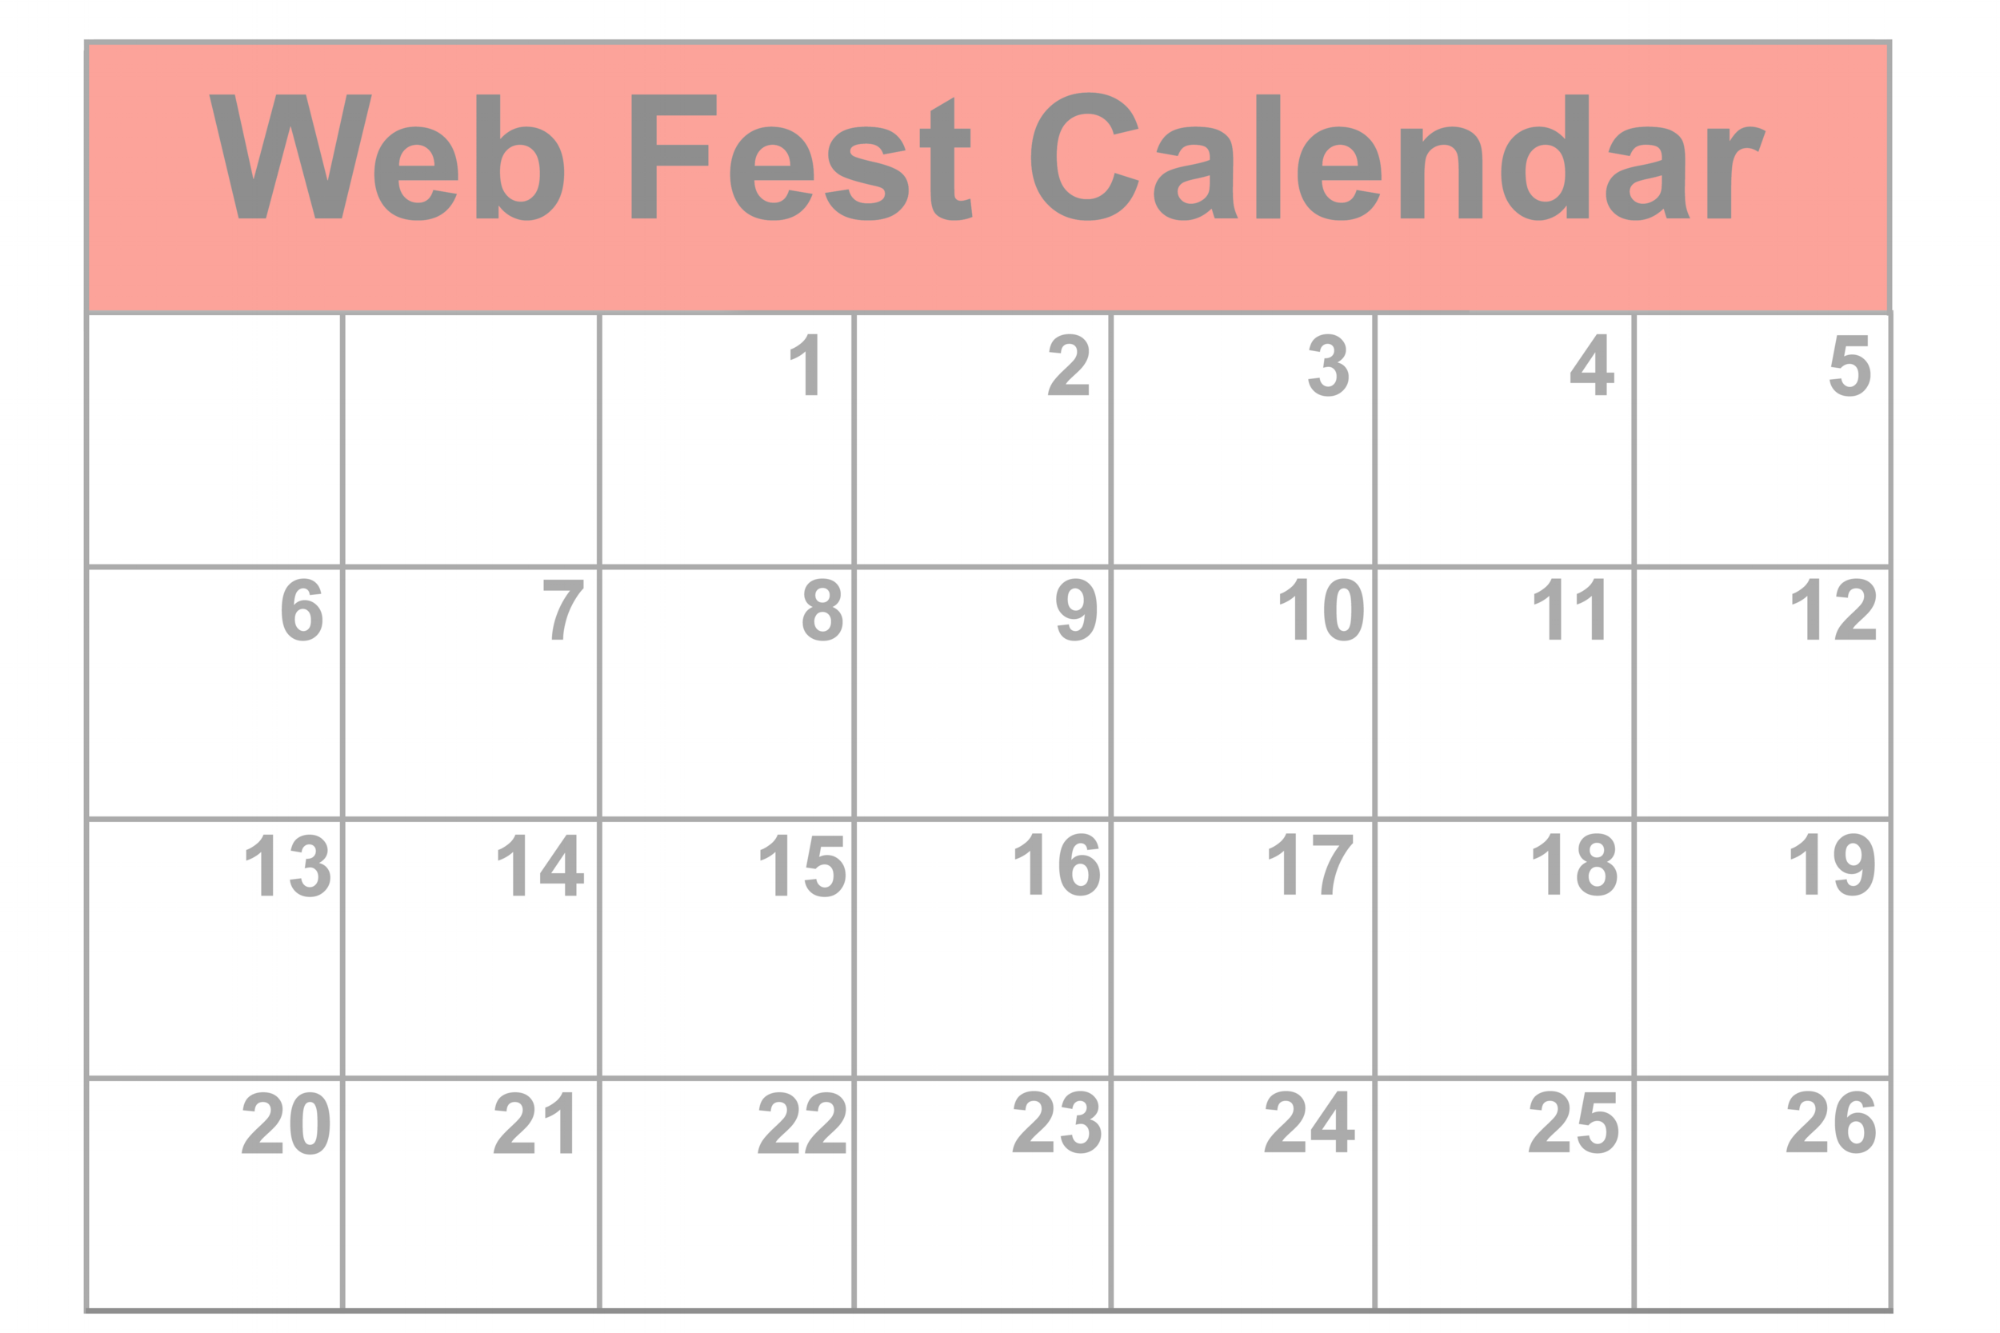 Check out the Web Fest Calendar